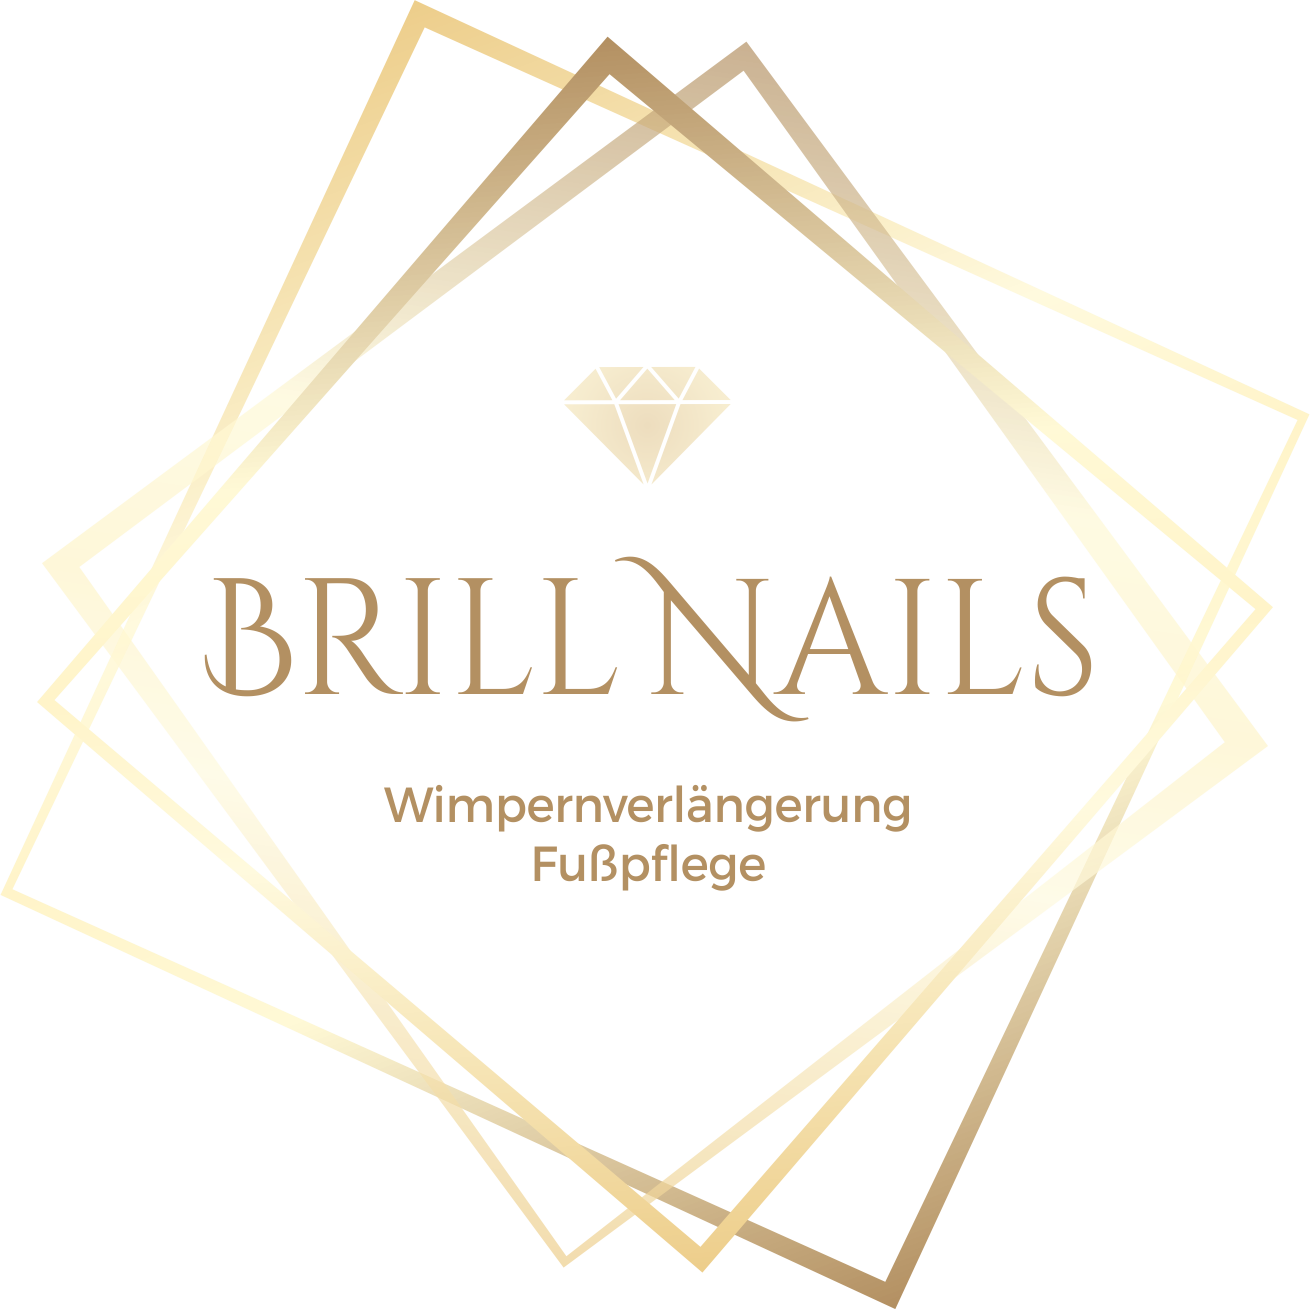 Brills Nails - Nagelstudio Wien